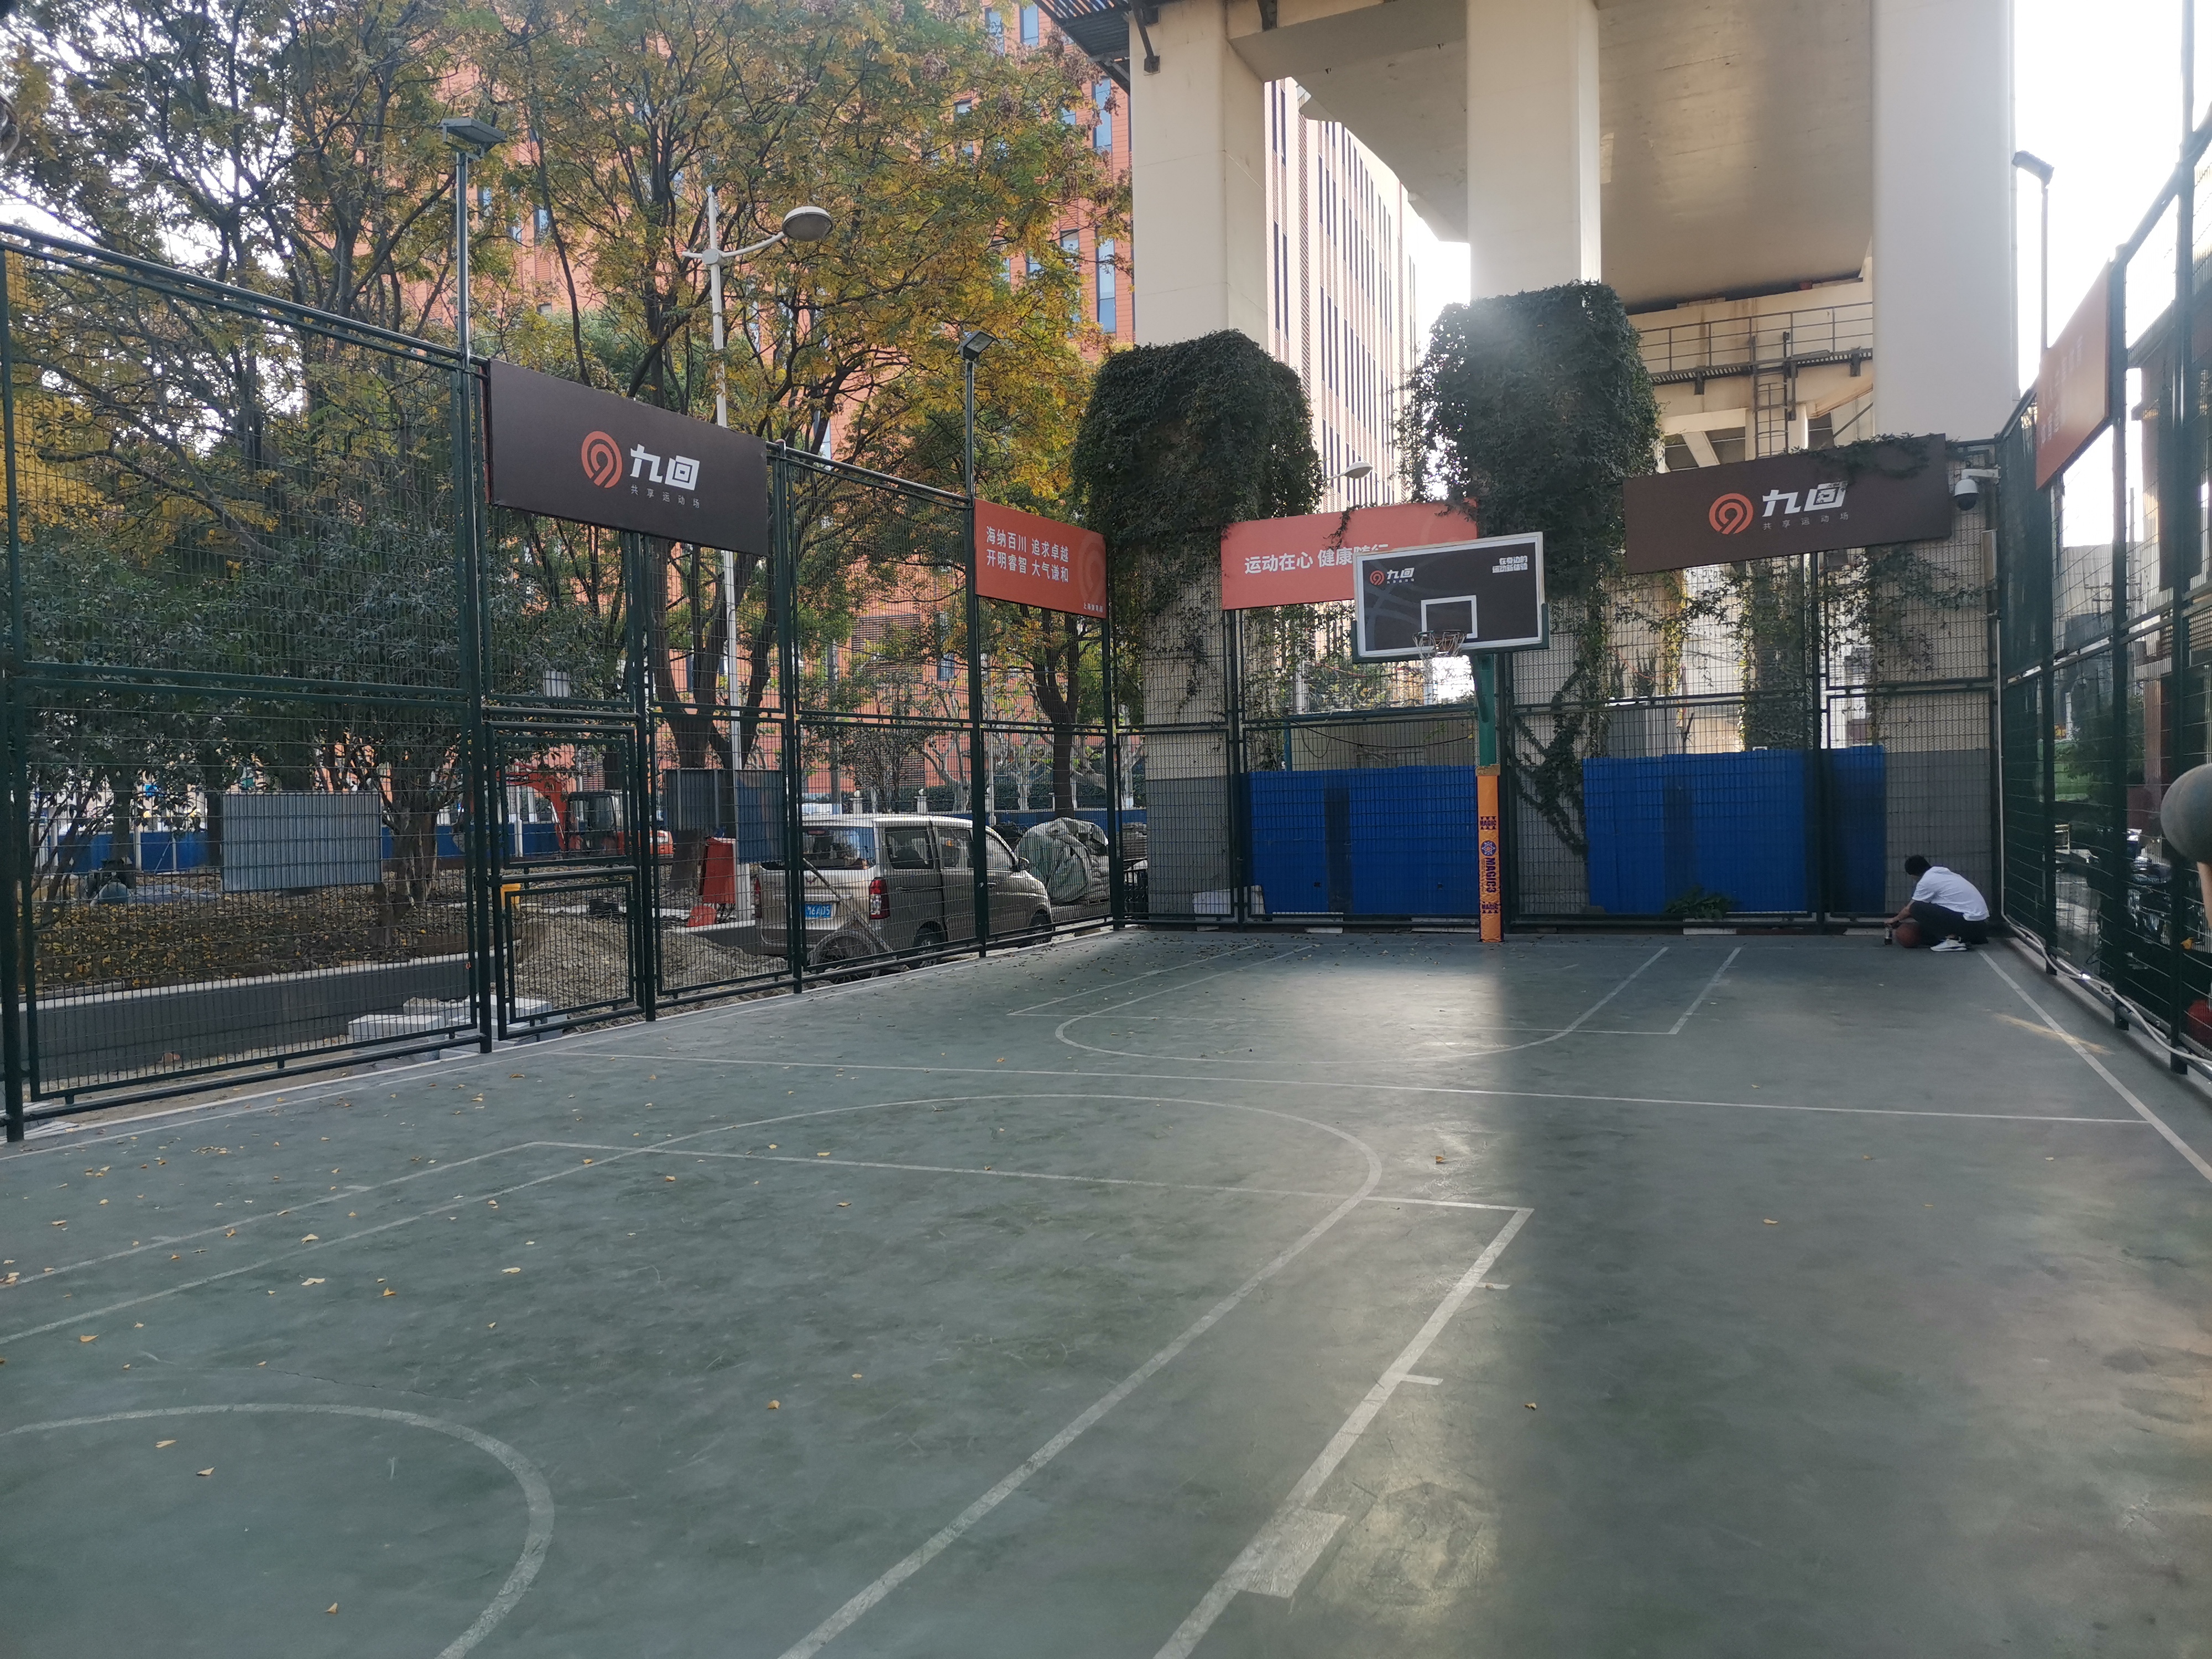 闵行体育公园篮球场图片